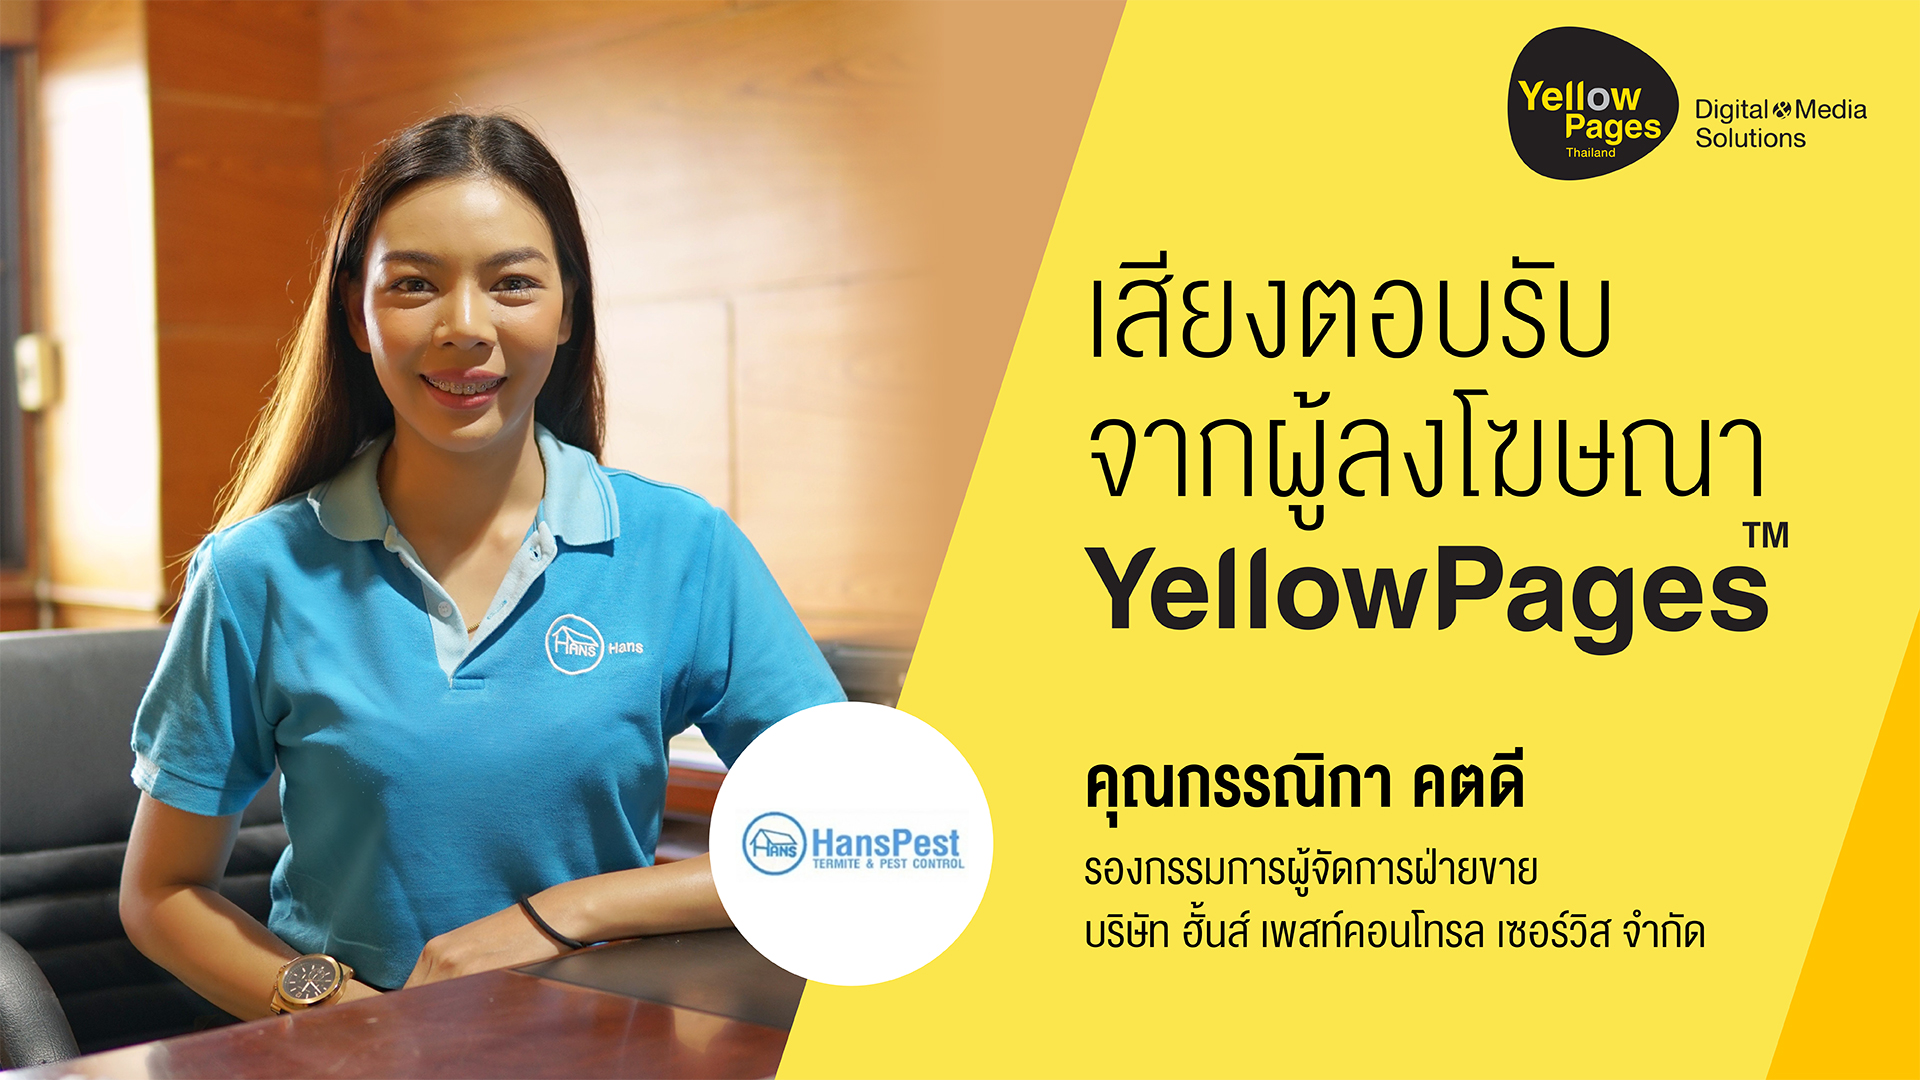 คุณกรรณิกา คตดี รองกรรมการผู้จัดการฝ่ายขาย บริษัท ฮั้นส์ เพสท์คอนโทรล เซอร์วิส จำกัด - ลงโฆษณากับ Thailand YellowPages